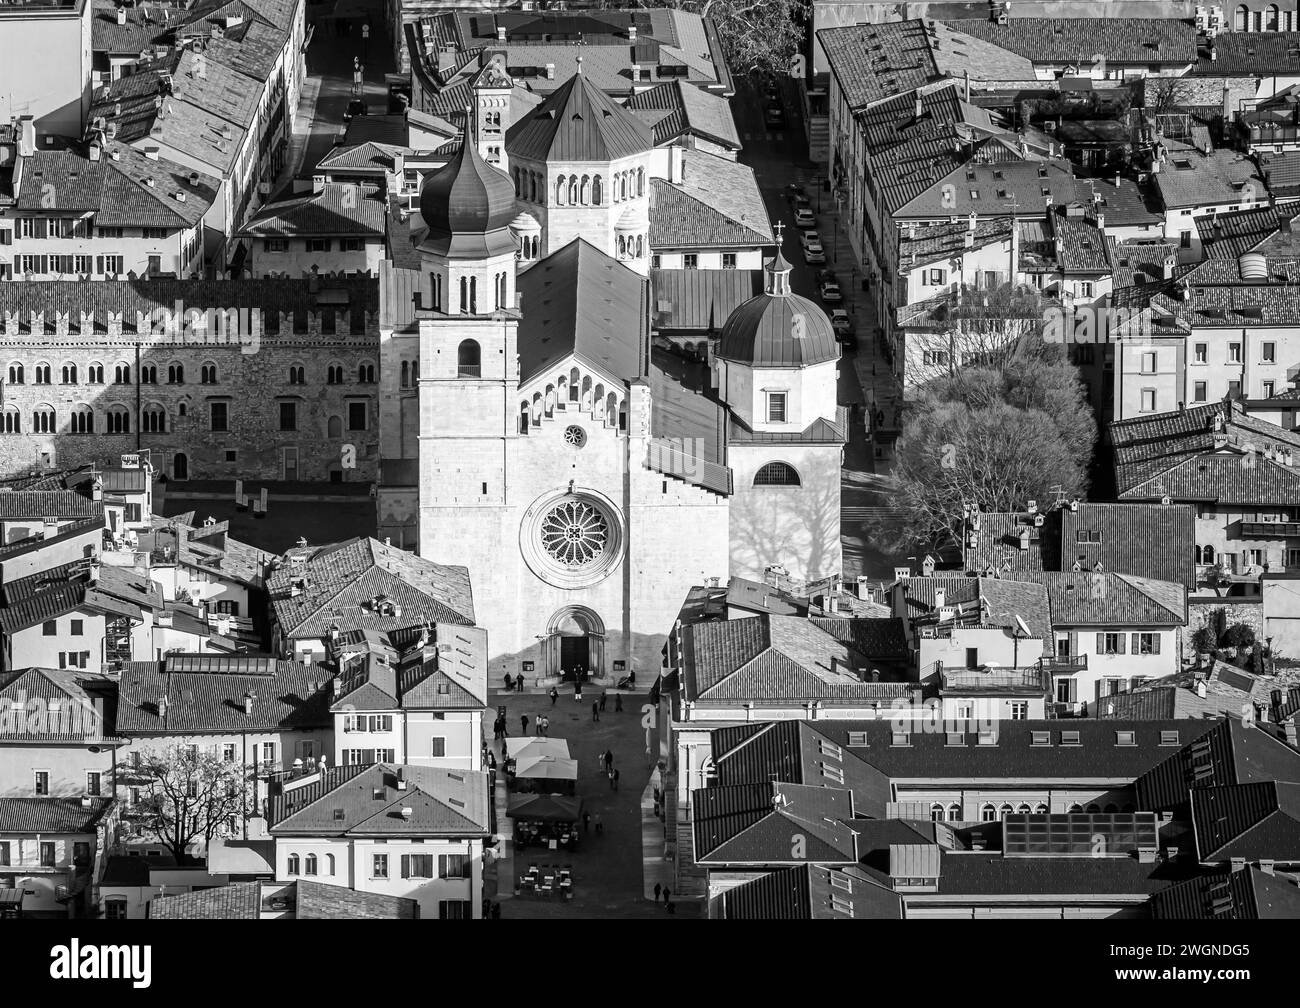 Vista sulla città di Trento dall'alto nella stagione invernale. Trentino alto Adige, Italia. Immagine in bianco e nero Foto Stock